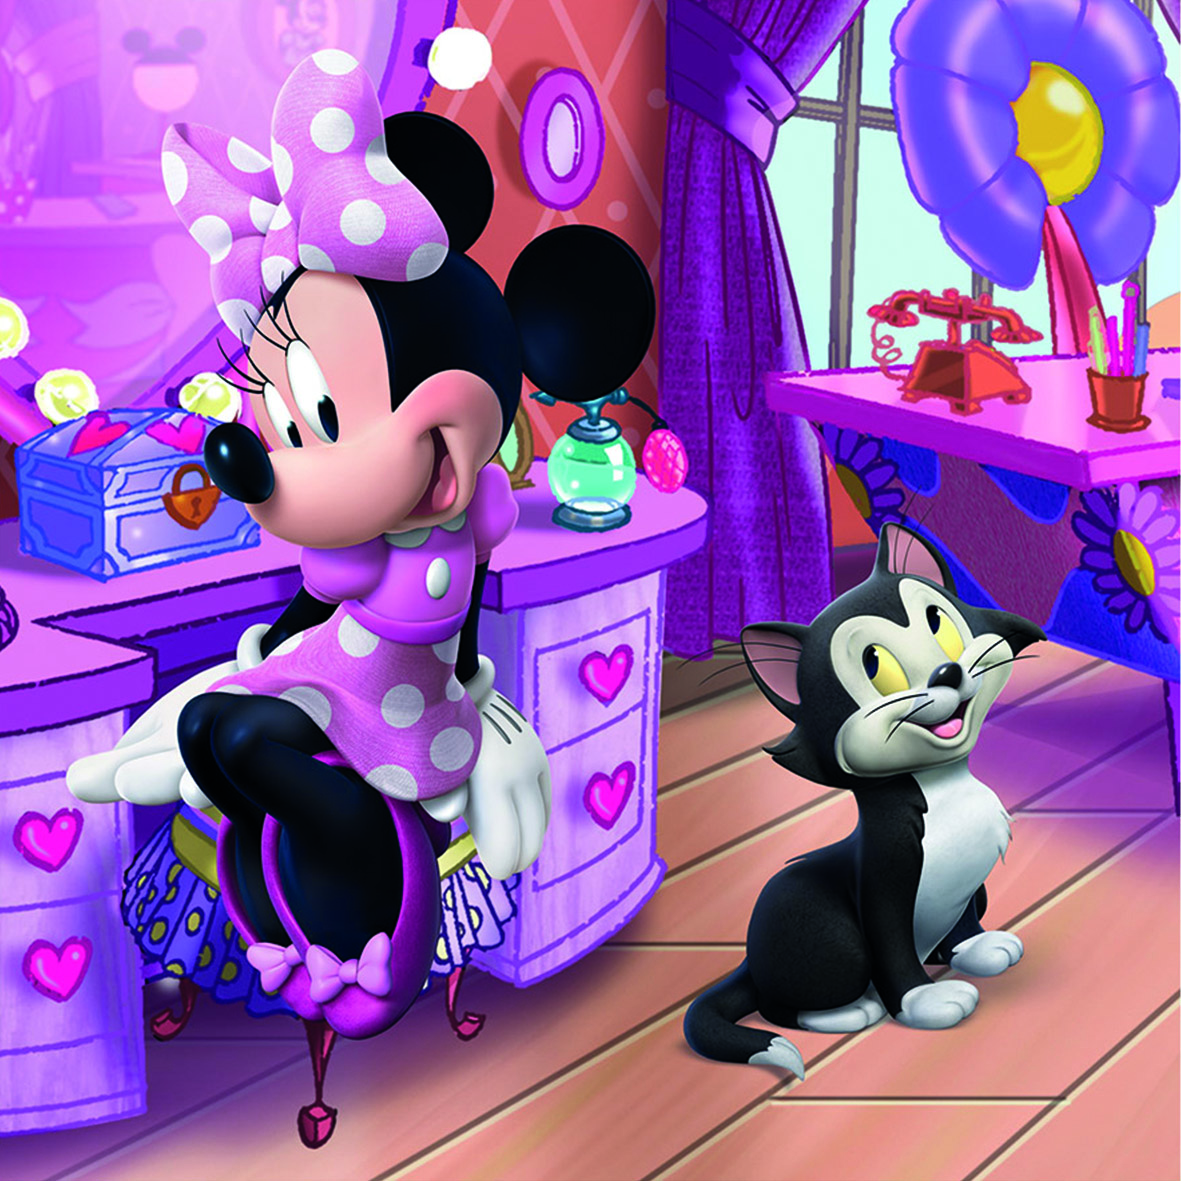 Disney Minnie puzzles facile pour enfant de 3 ans